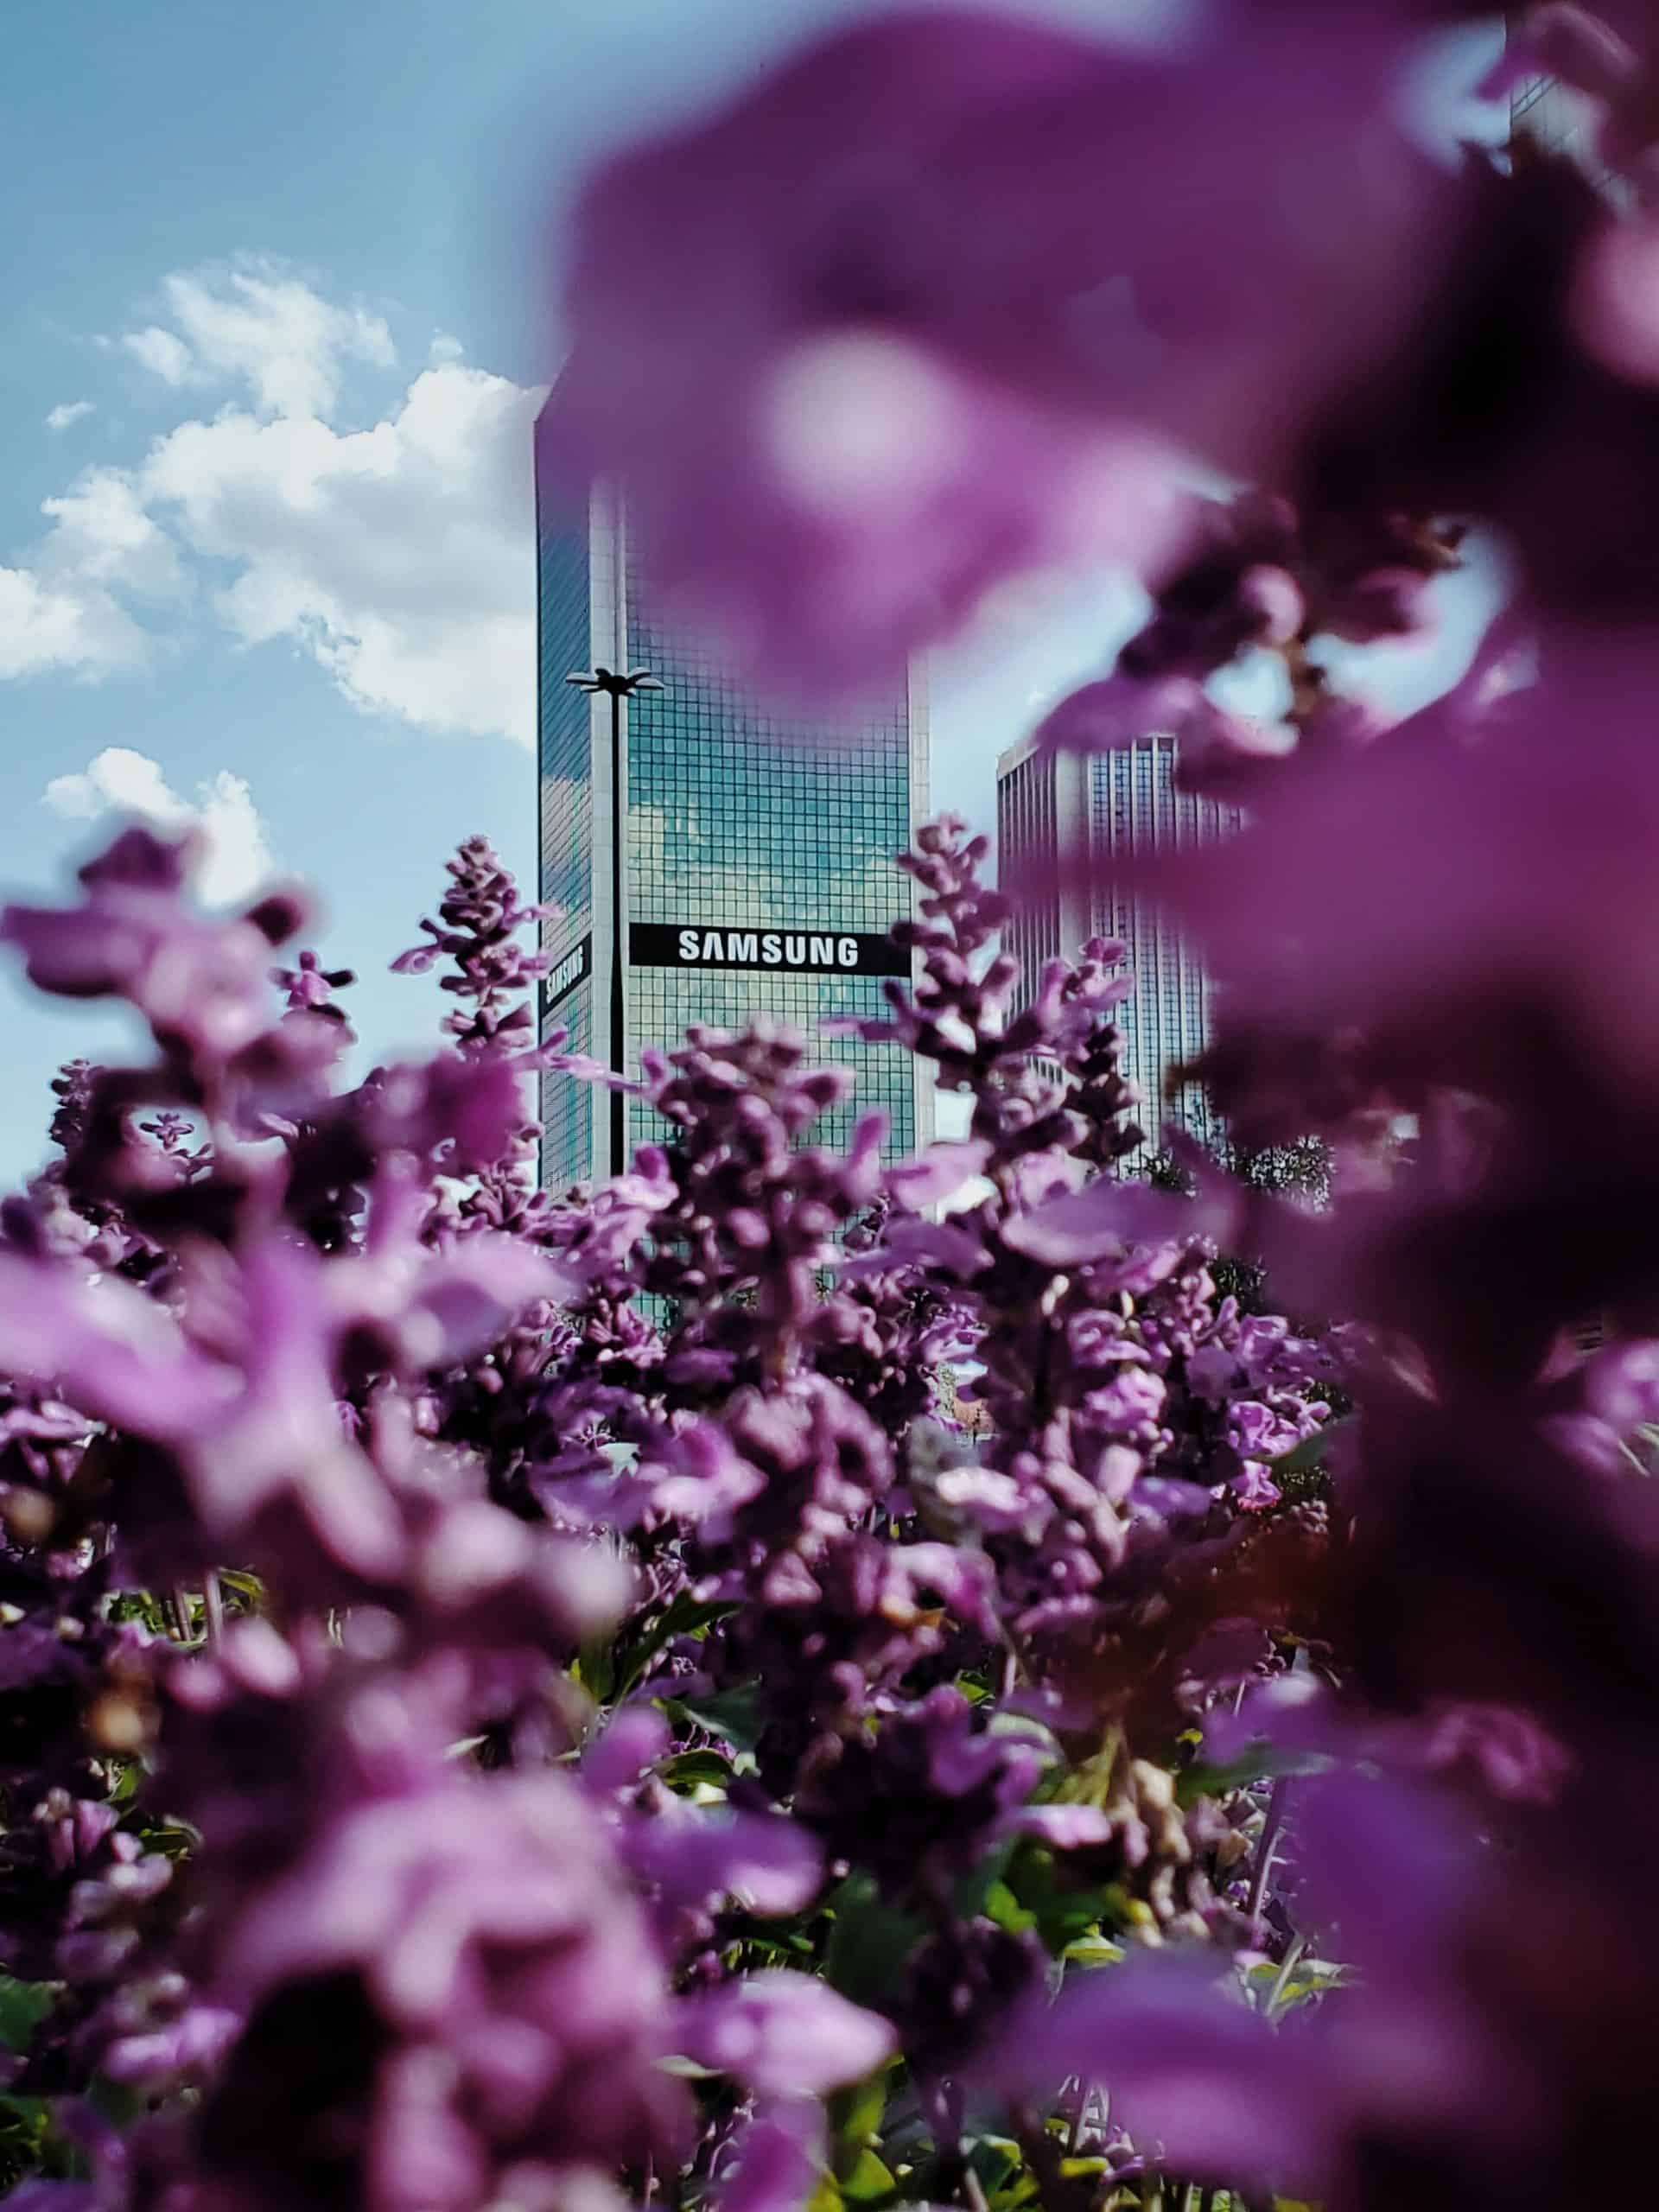 Un immeuble de bureau samsung pris en photo à travers des fleurs